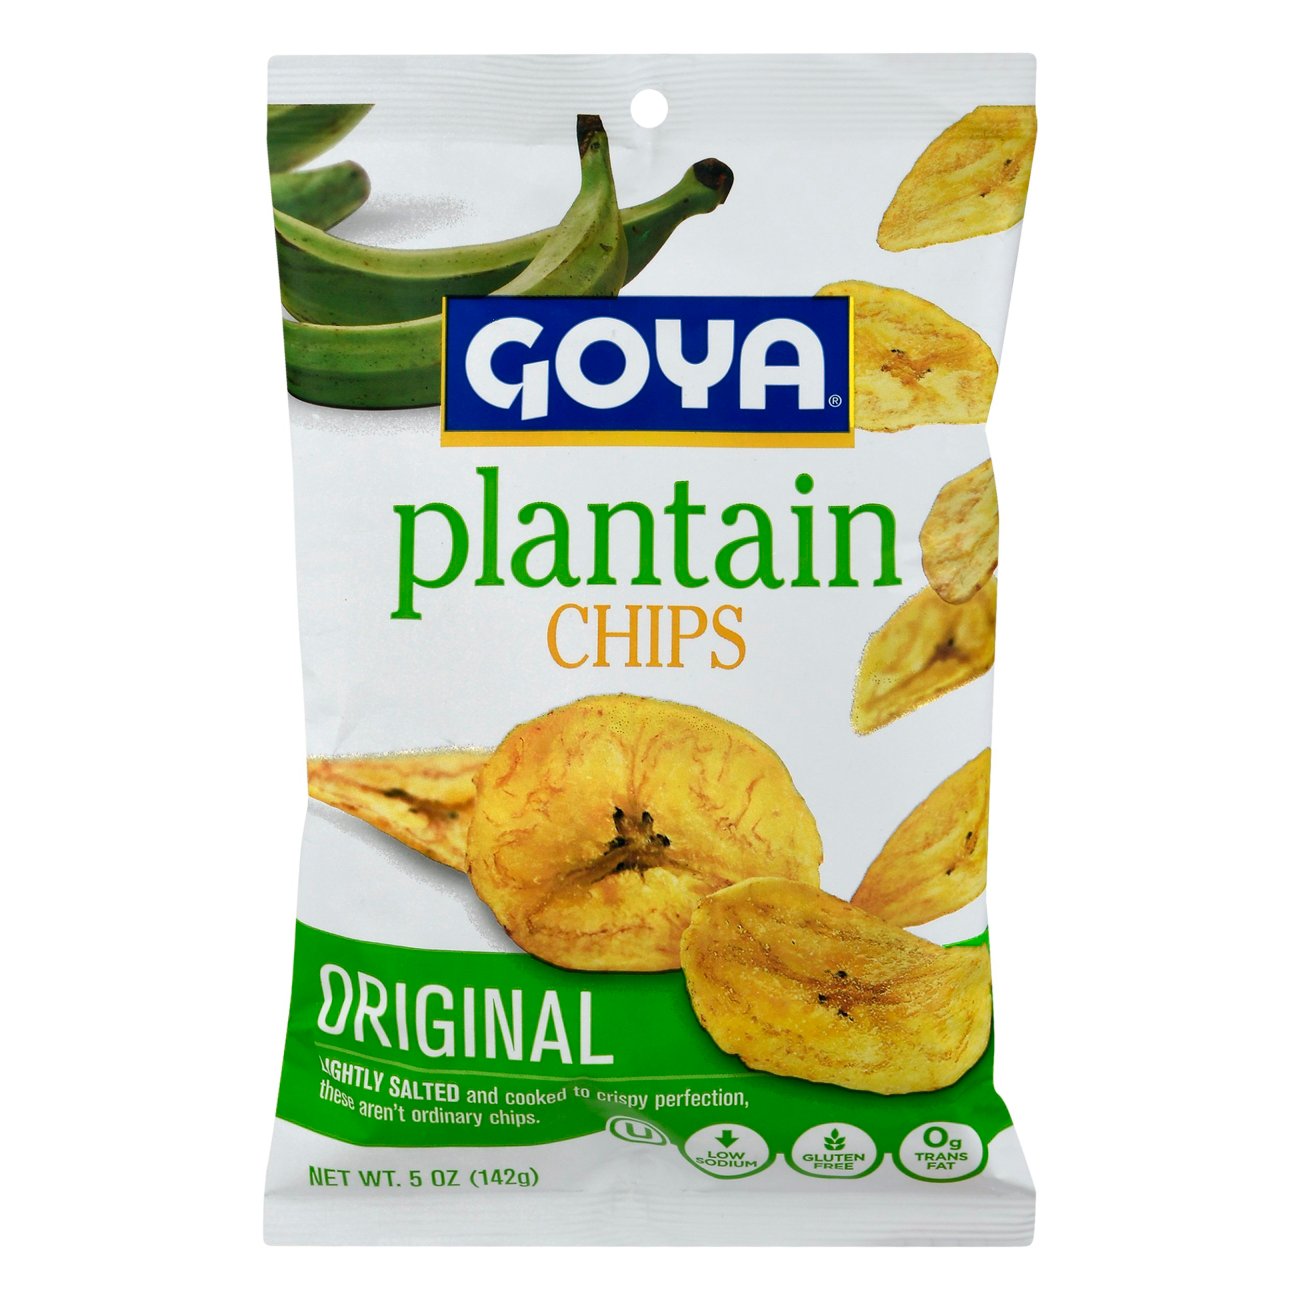 Chips - Platanitos Shop Plantain H-E-B Goya at Chips